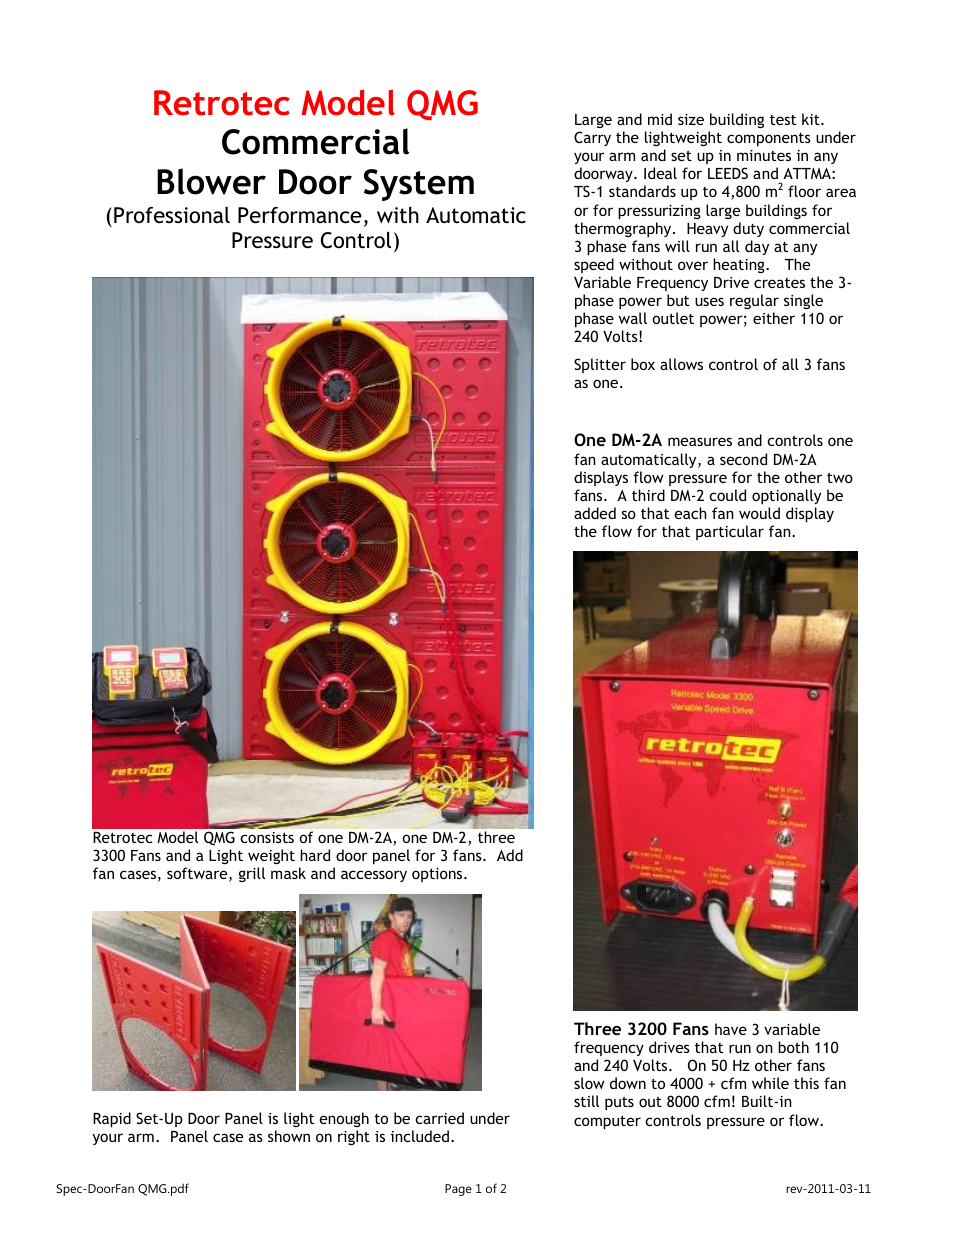 Blower Door Triple Fan System